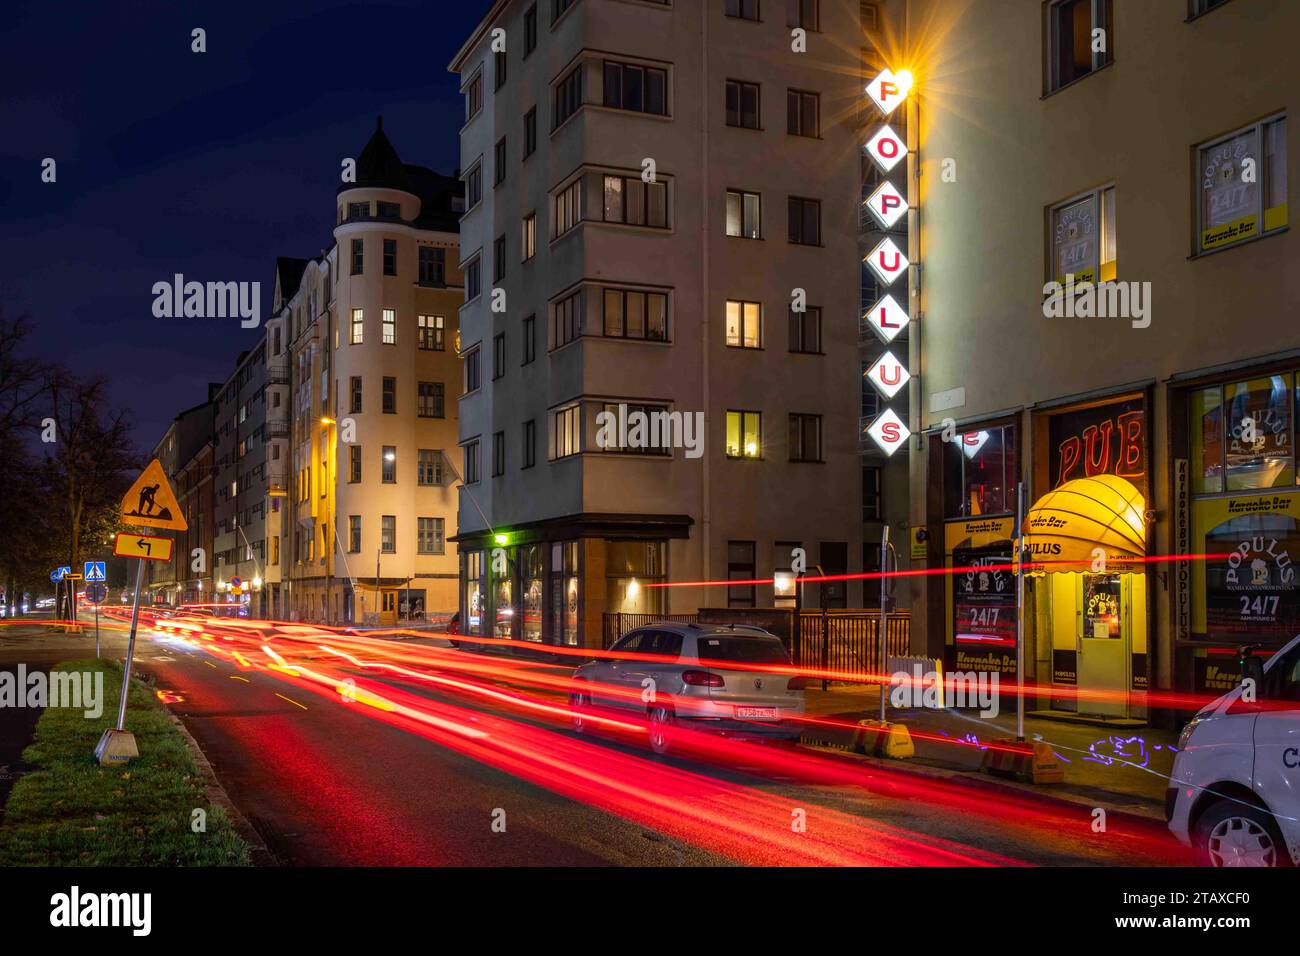 Aleksis Kiven katu vue de rue longue exposition avec traînées lumineuses et lettres du canal Populus ou lettres lumineuses dans le district de Harju à Helsinki, Finlande Banque D'Images